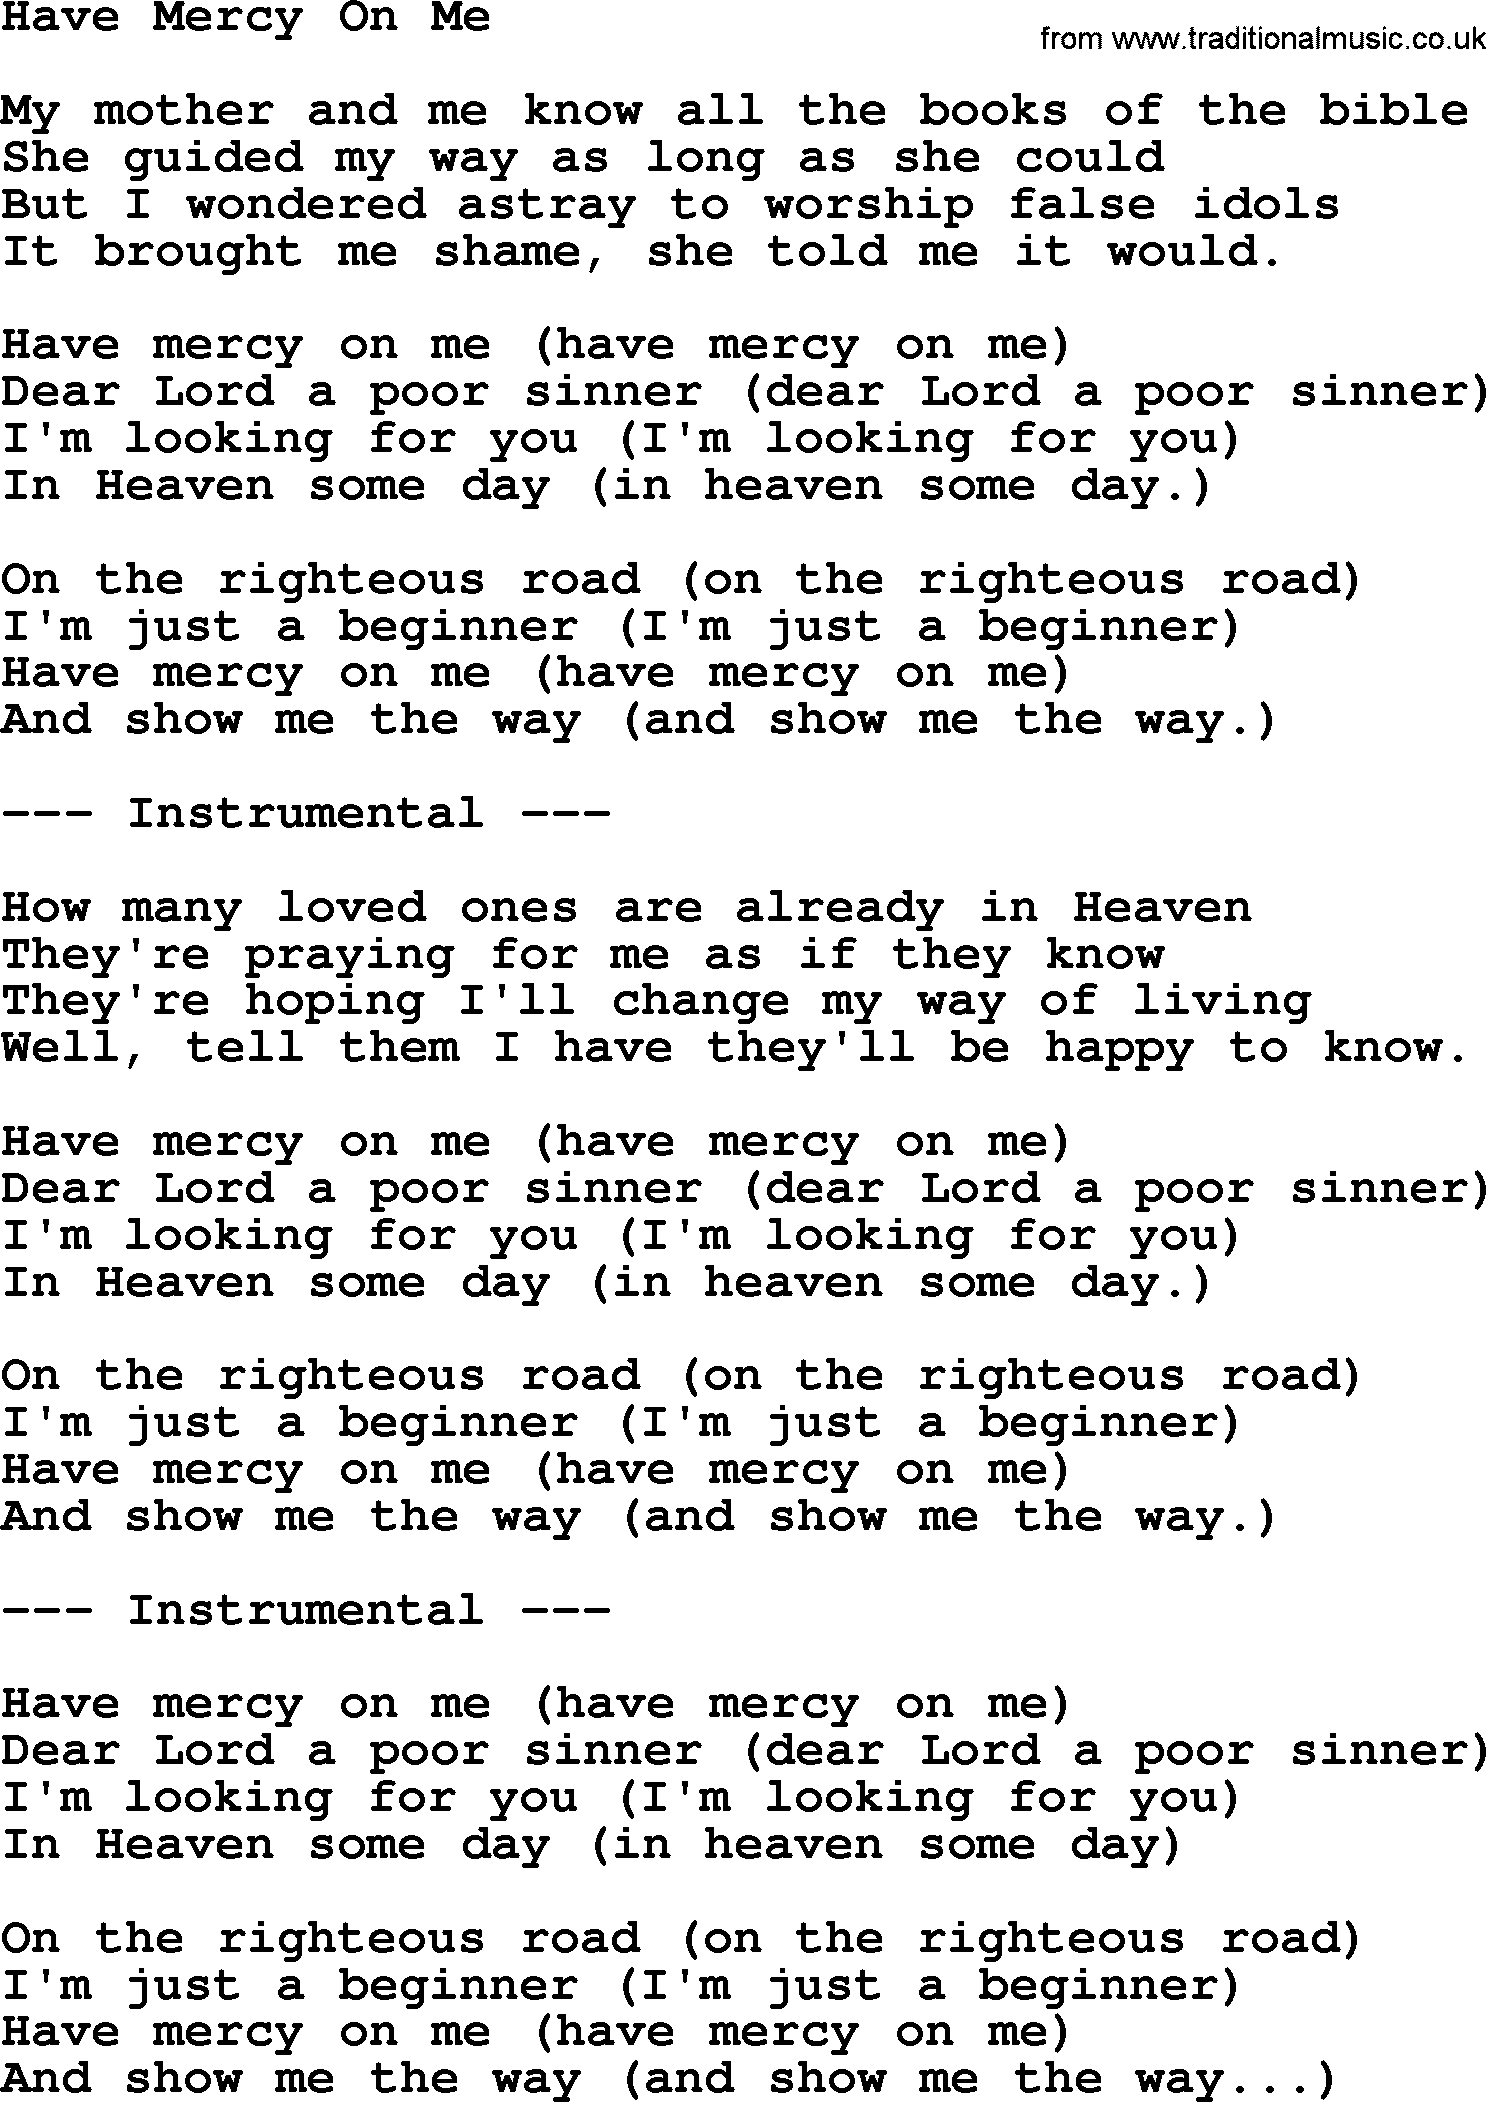 George Jones song: Have Mercy On Me, lyrics